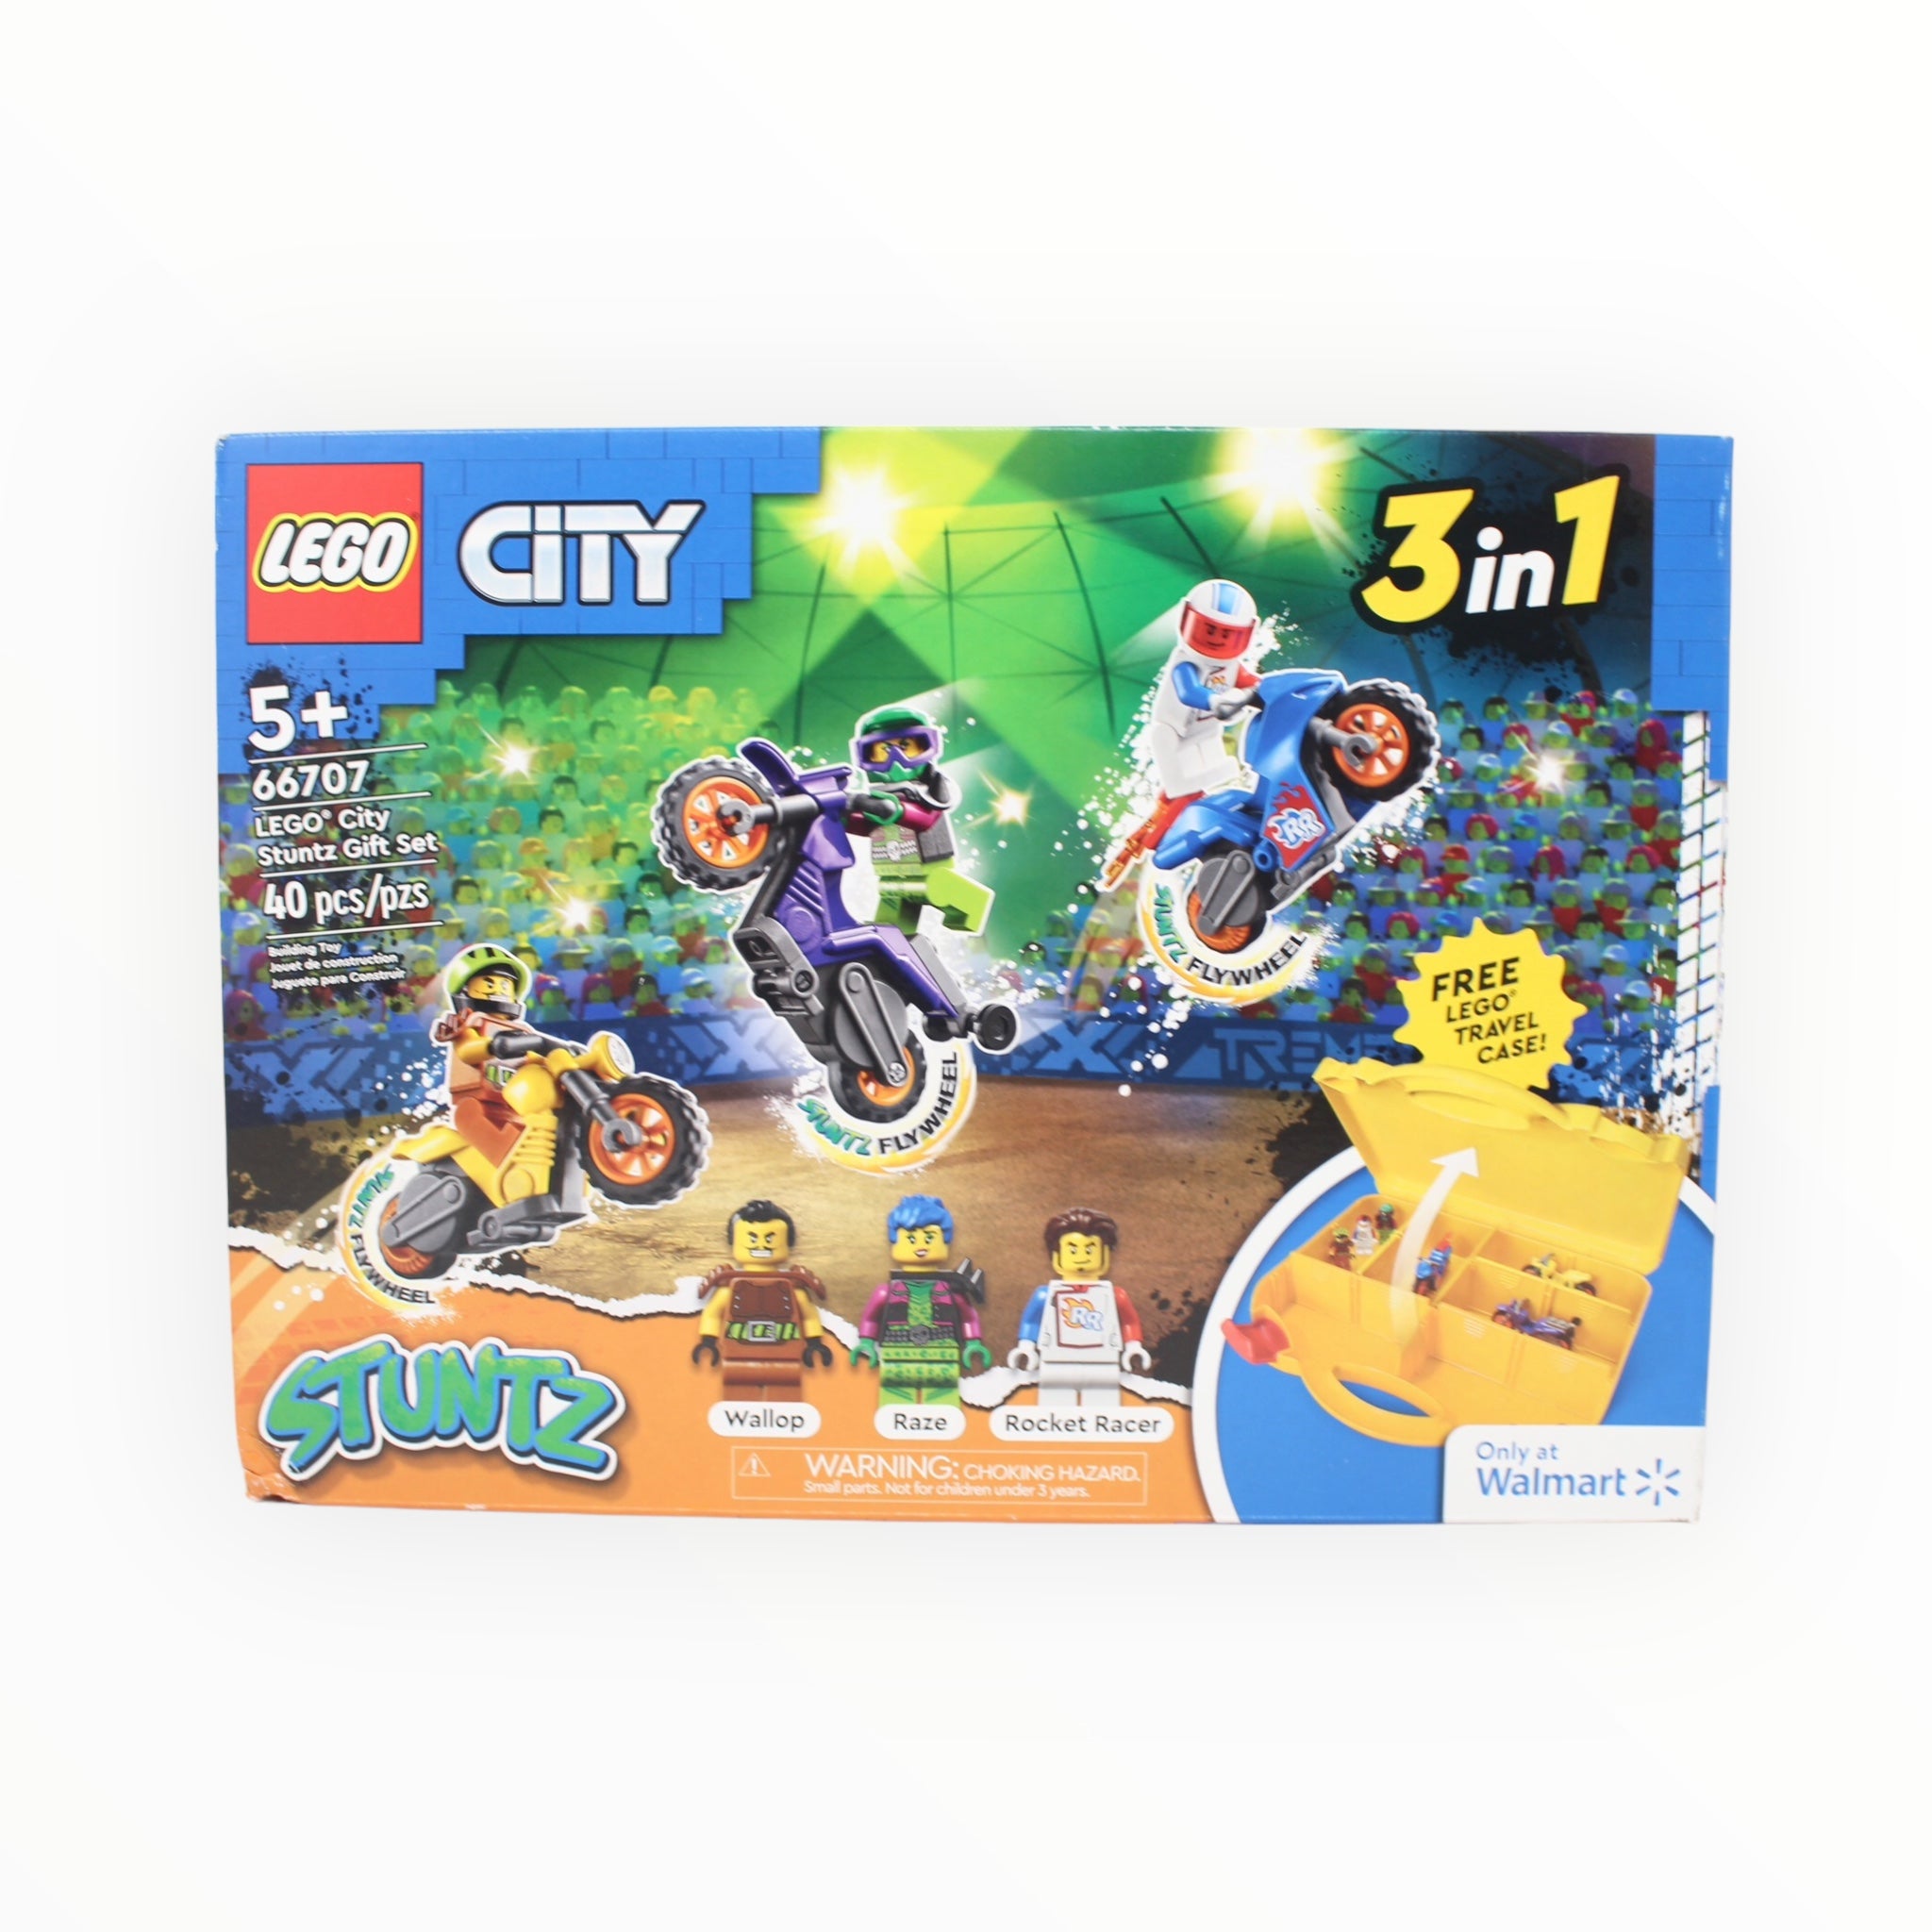 Retired Set 66707 LEGO City Stuntz Gift Set